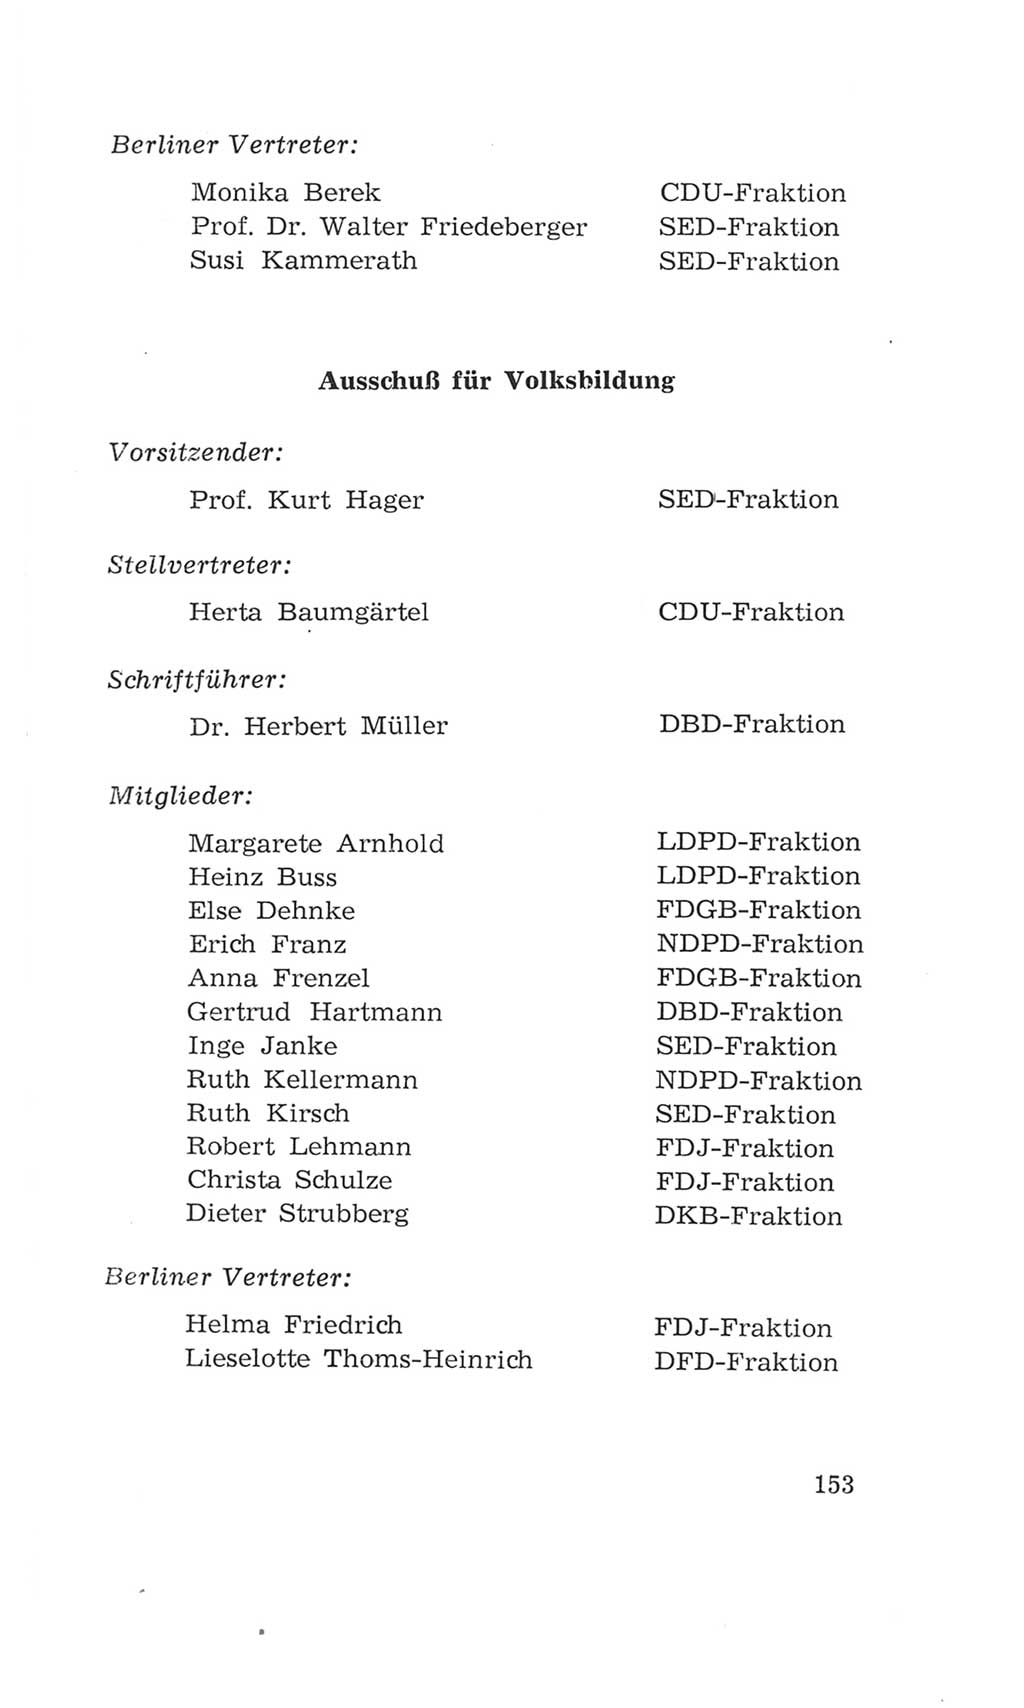 Volkskammer (VK) der Deutschen Demokratischen Republik (DDR), 4. Wahlperiode 1963-1967, Seite 153 (VK. DDR 4. WP. 1963-1967, S. 153)